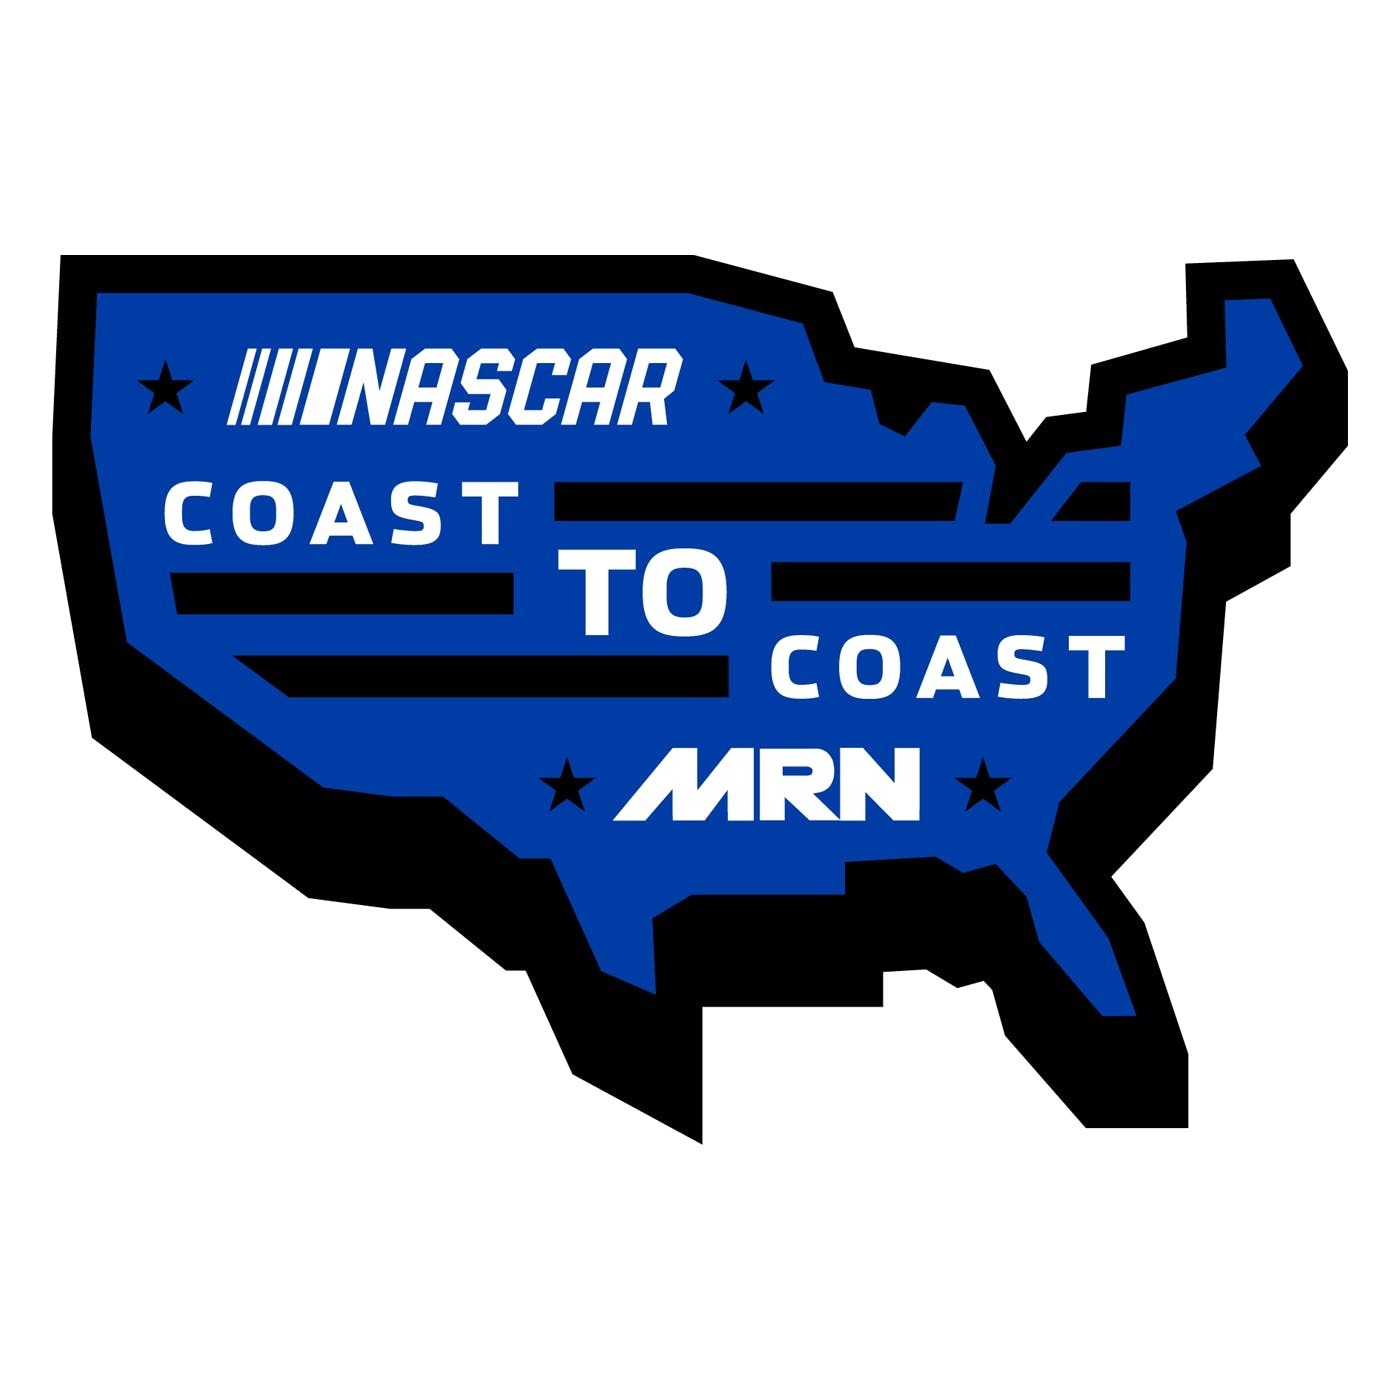 NASCAR Coast to Coast - Nov 6, 2019